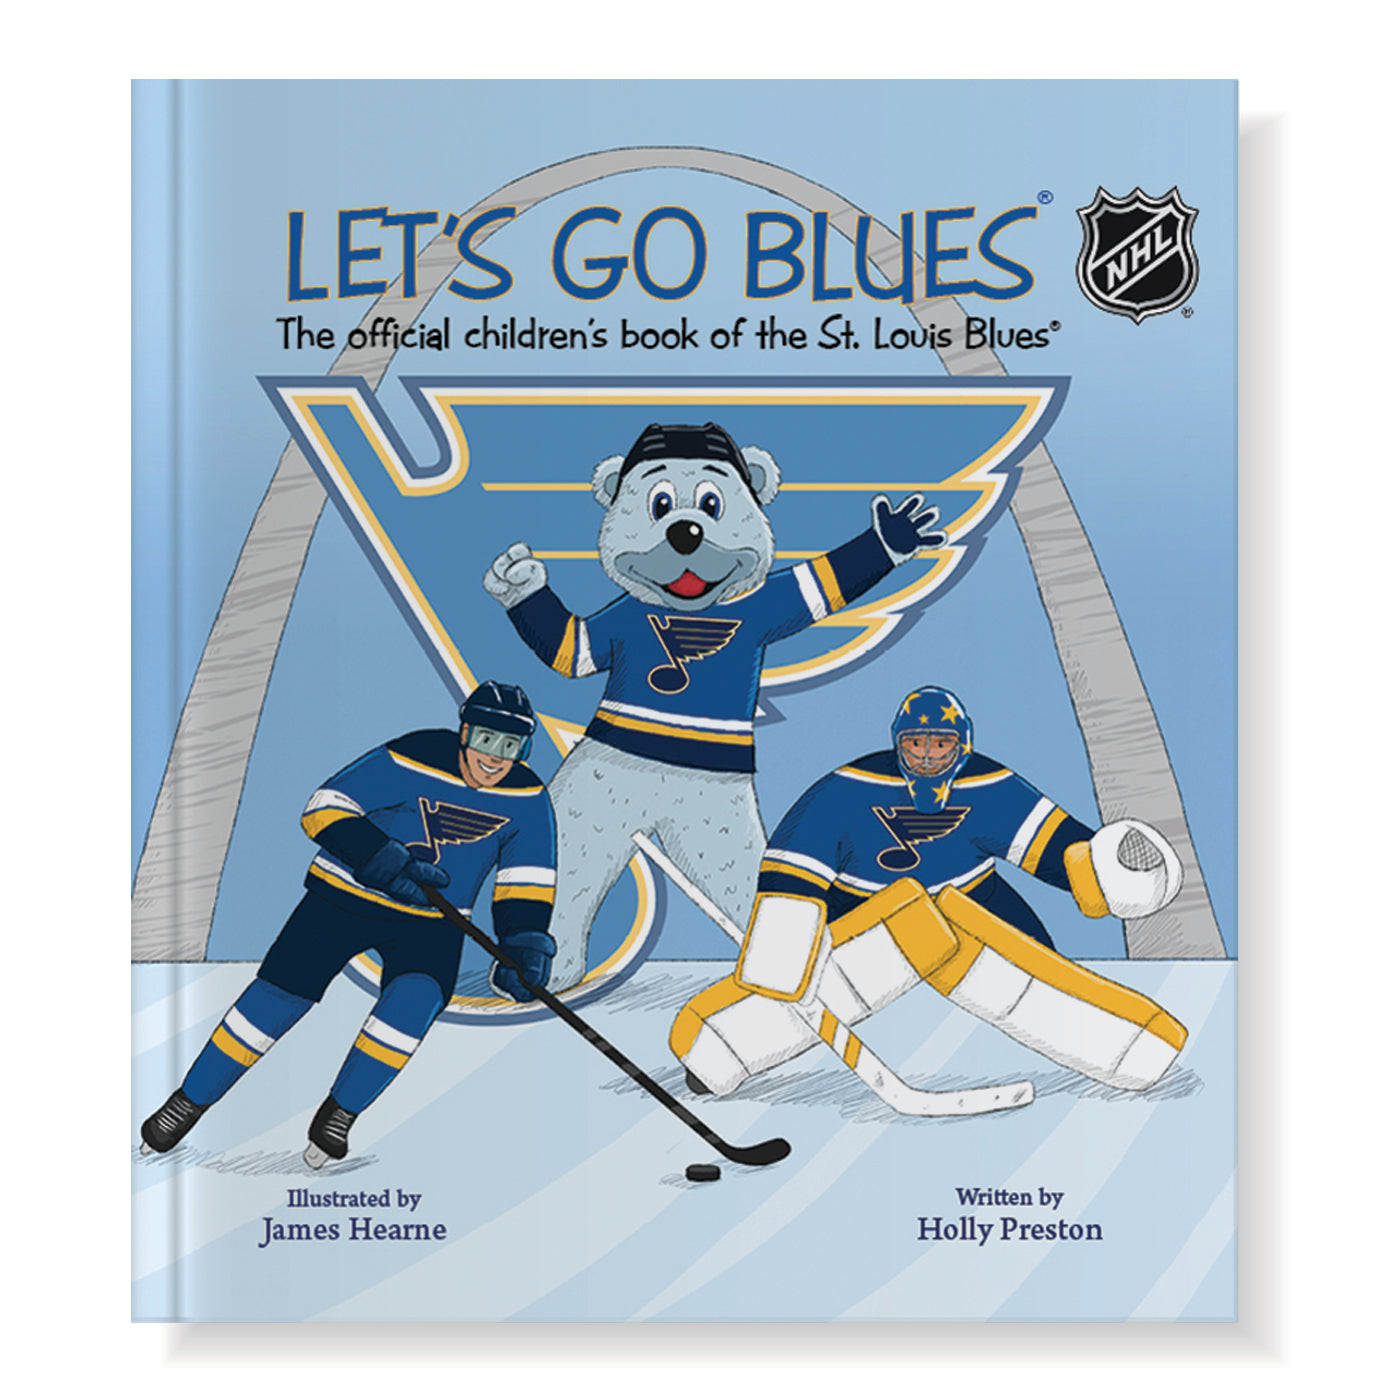 Louie St.Louis Blues Mascot =)  St louis blues hockey, St louis